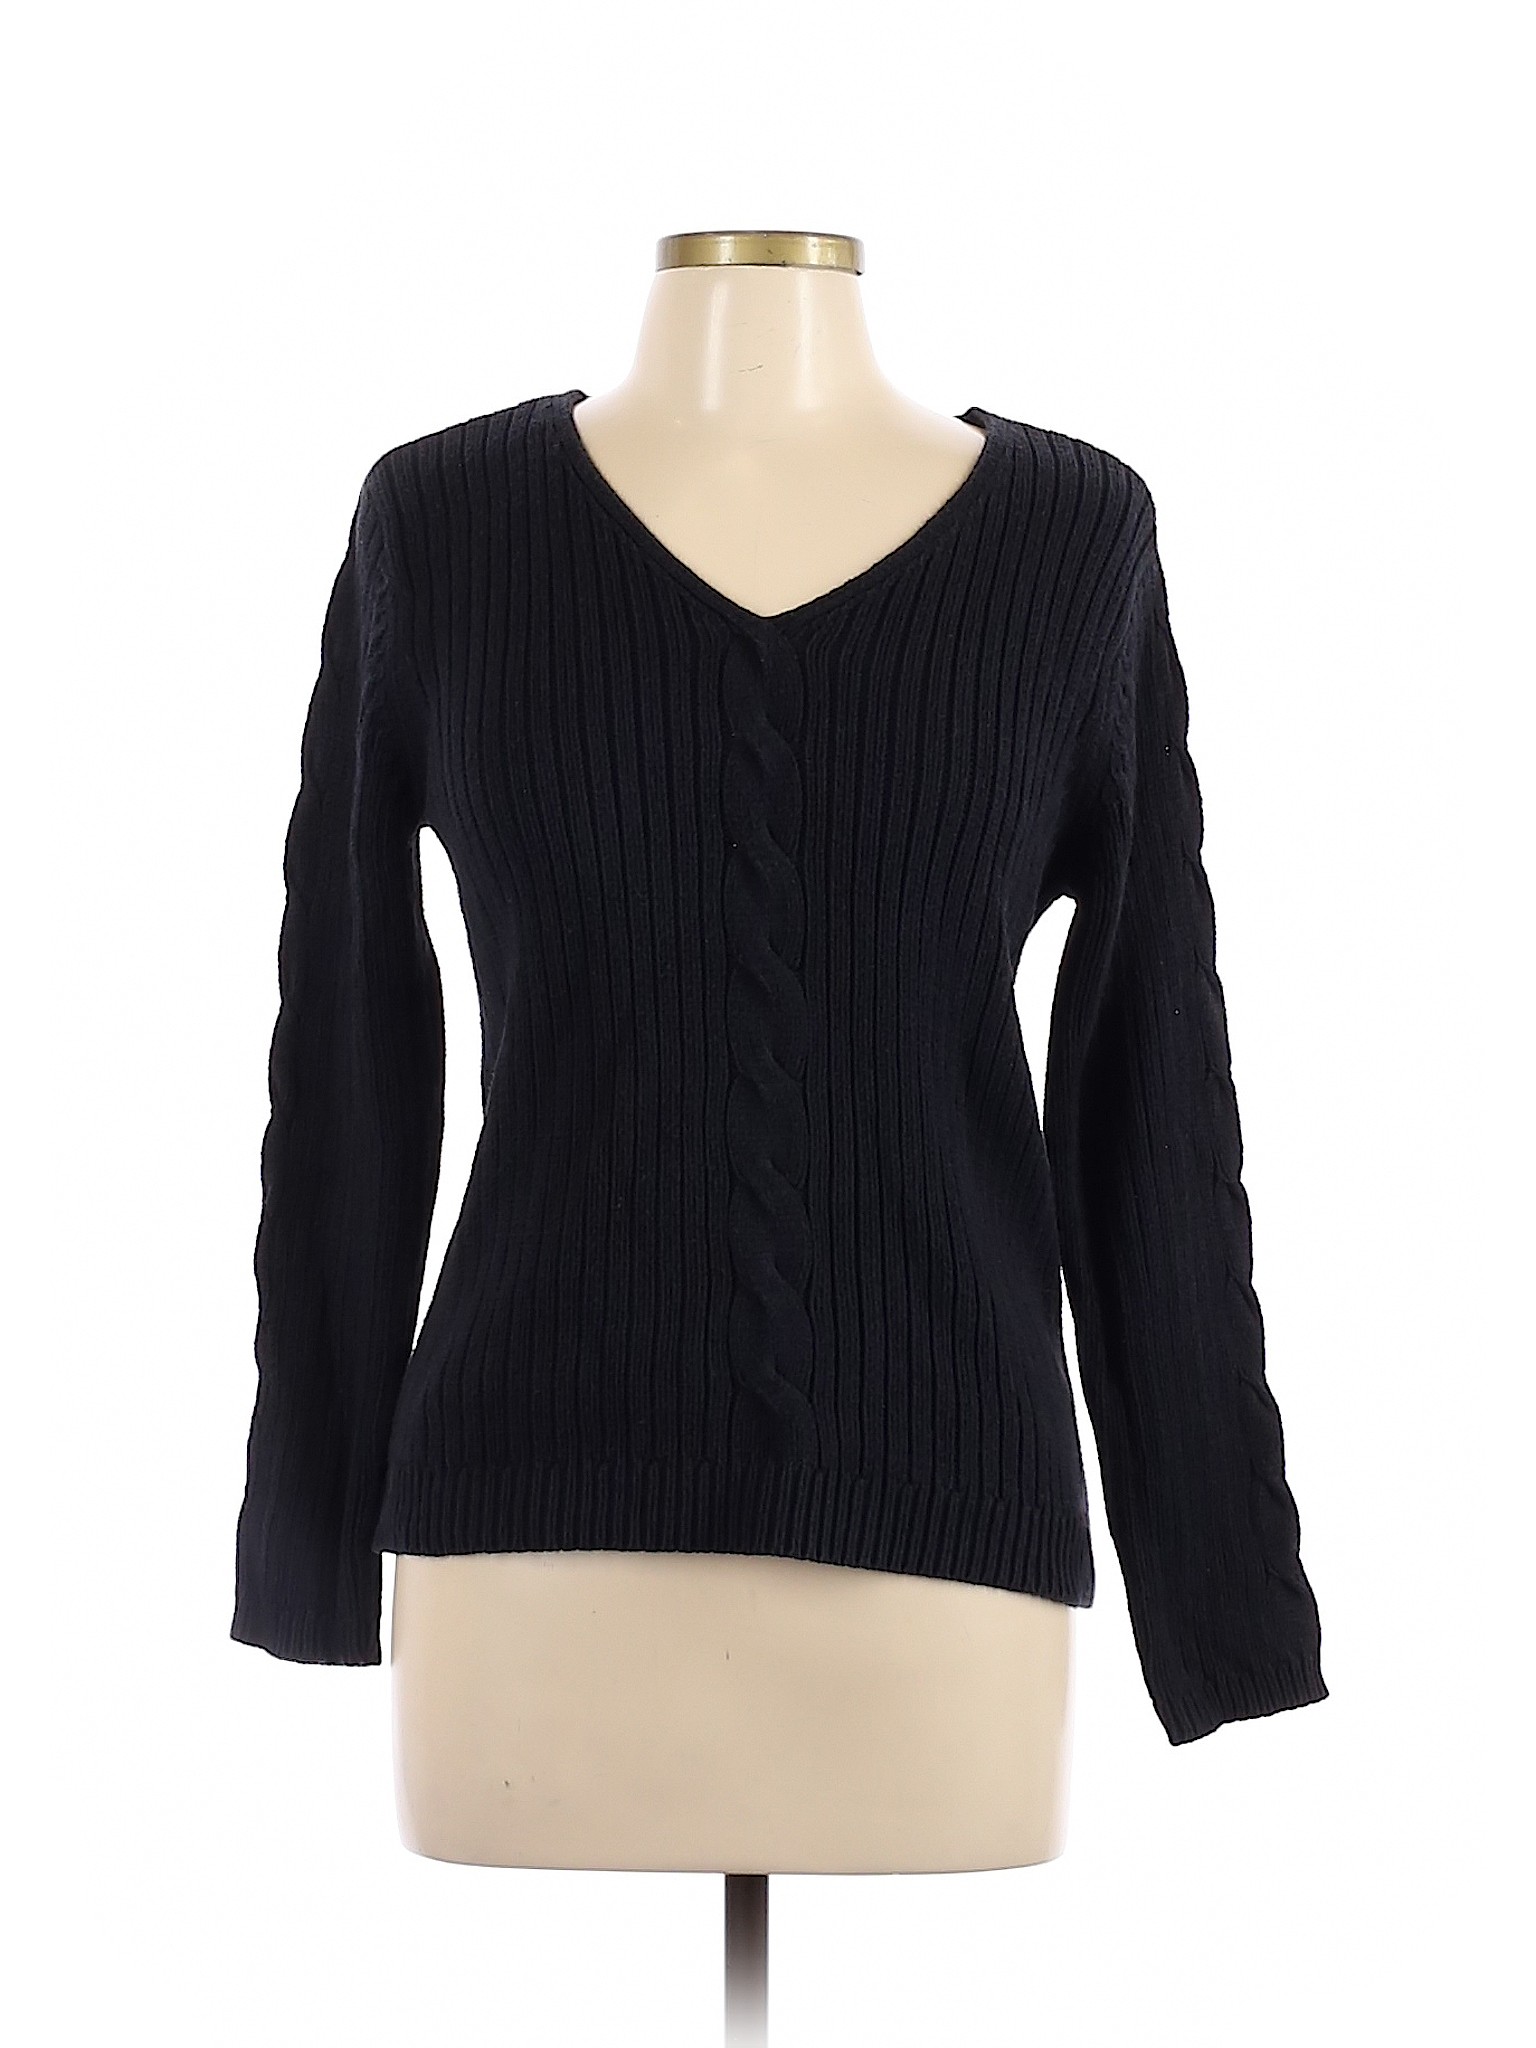 Lizwear by Liz Claiborne Women Black Pullover Sweater L | eBay